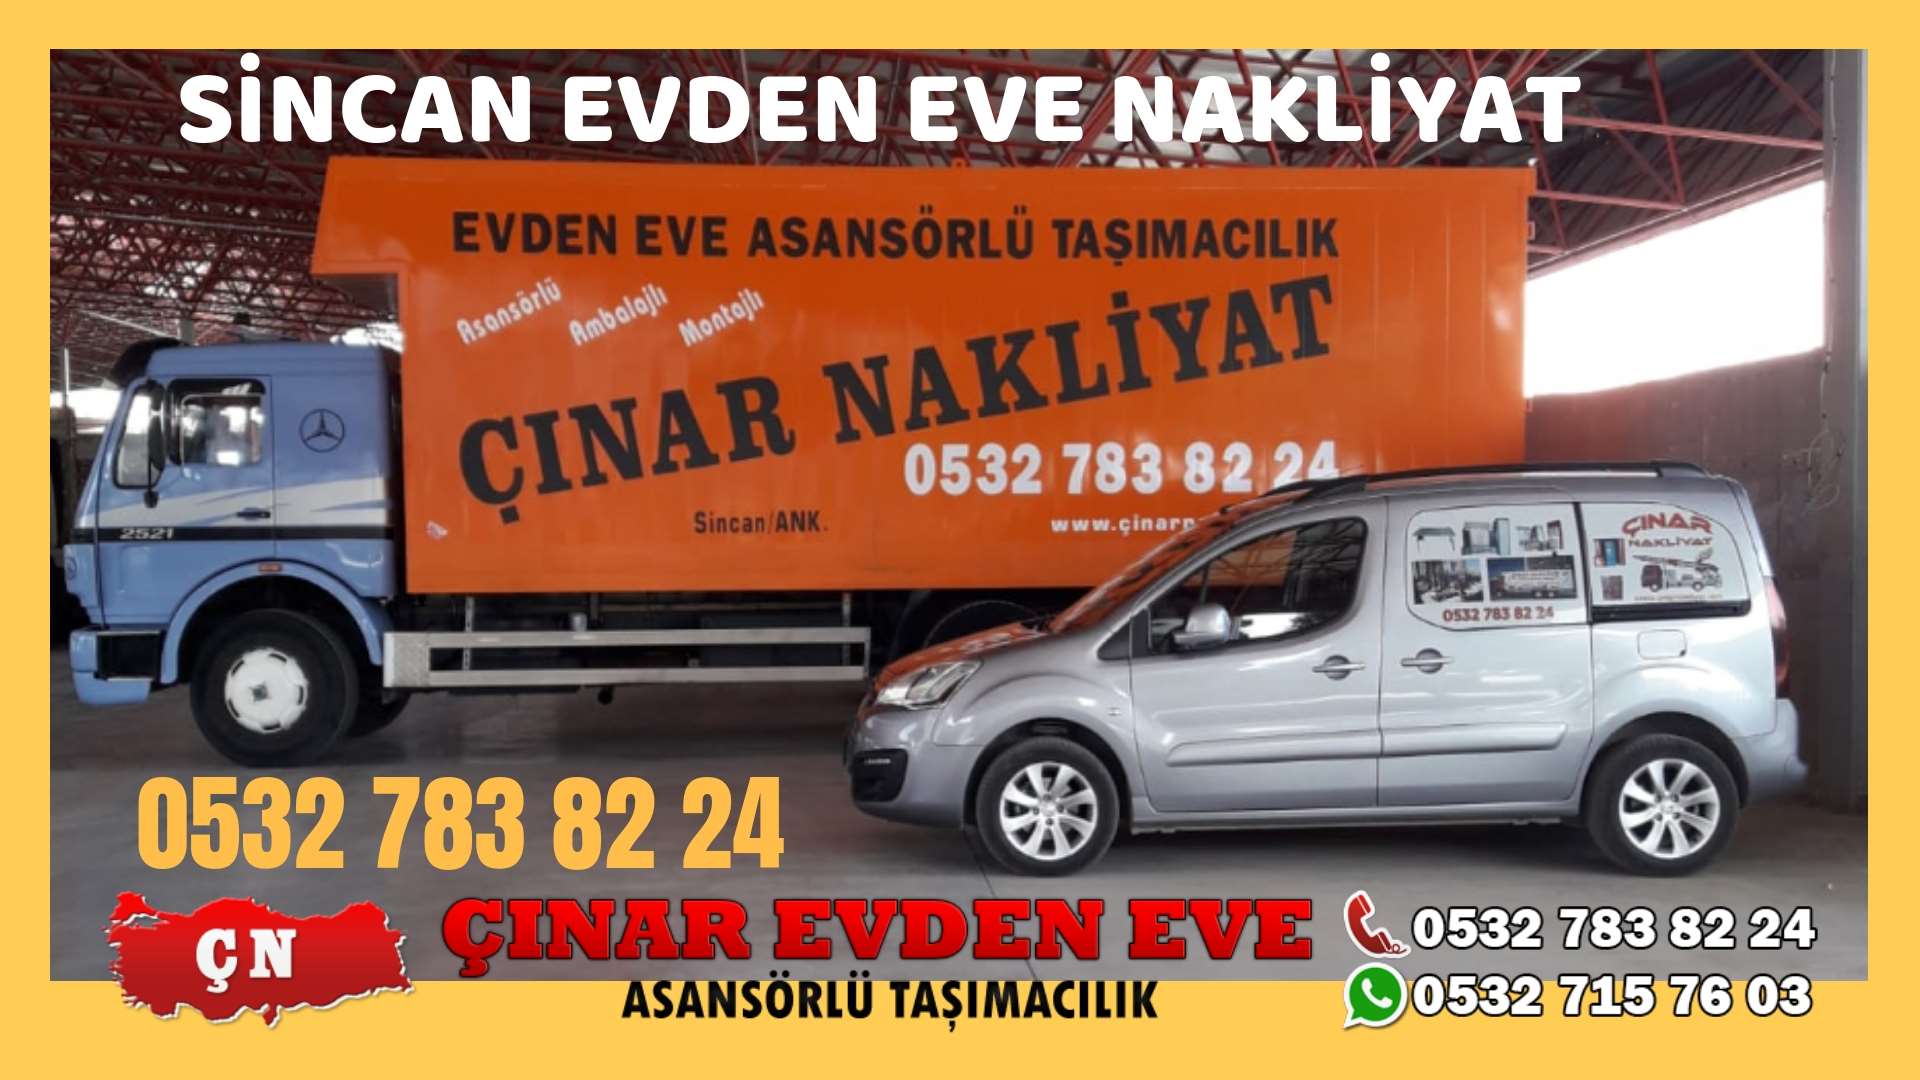 Ankara Elvankent Evden eve ev taşıma sincan nakliye fiyatları 0532 715 76 03